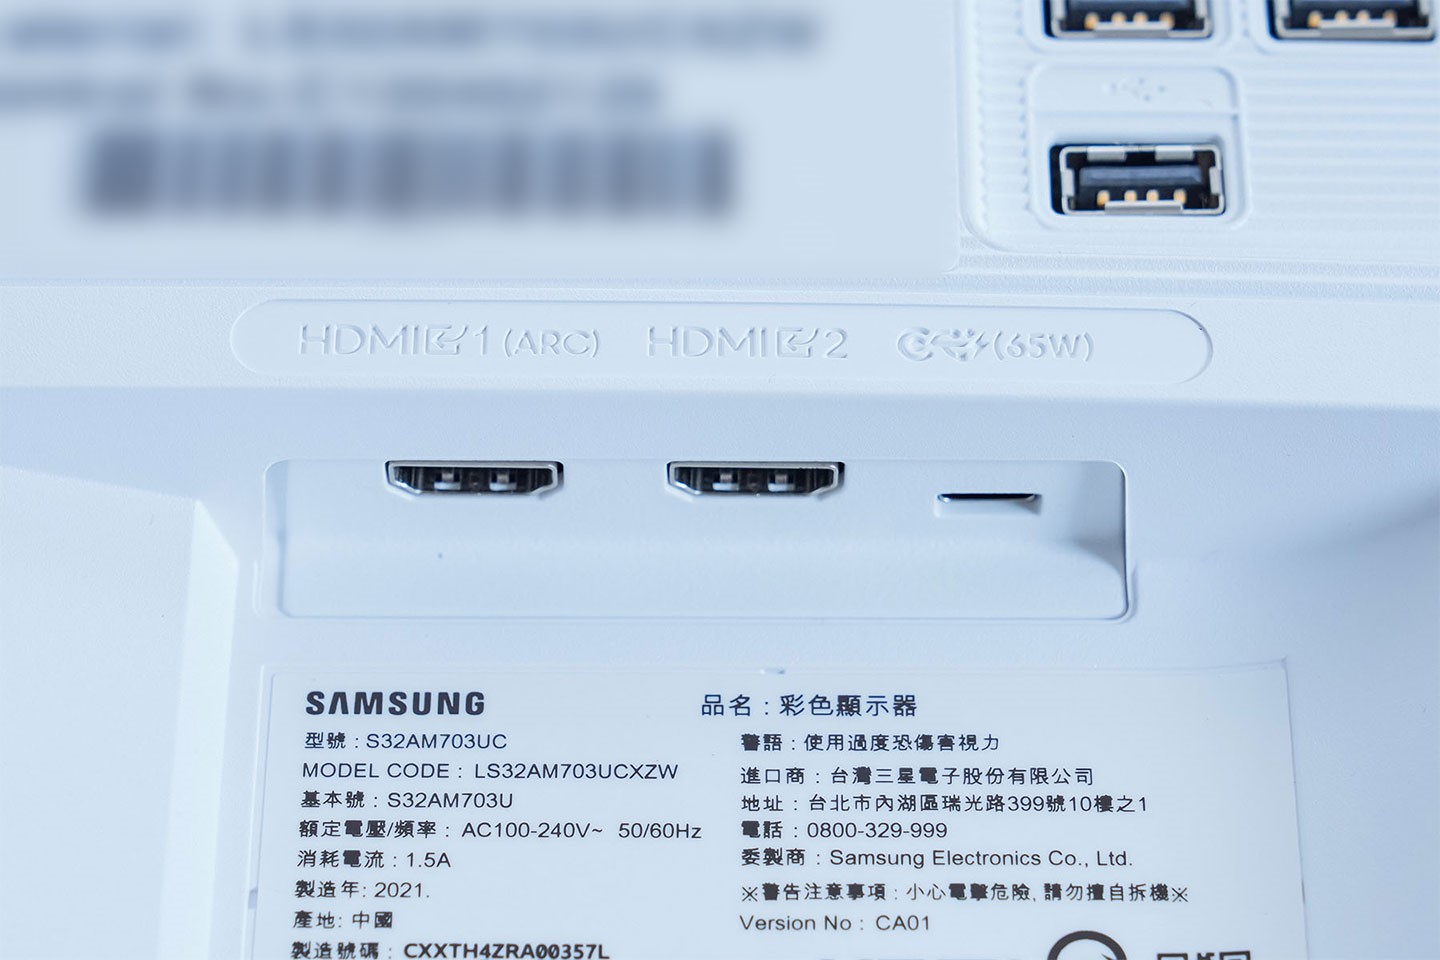 連接埠方面，M7 提供兩組 HDMI 2.0 埠與一組 USB-C 埠，皆可作為視訊輸出使用，其，USB-C 埠還兼具 65W 充電功能。